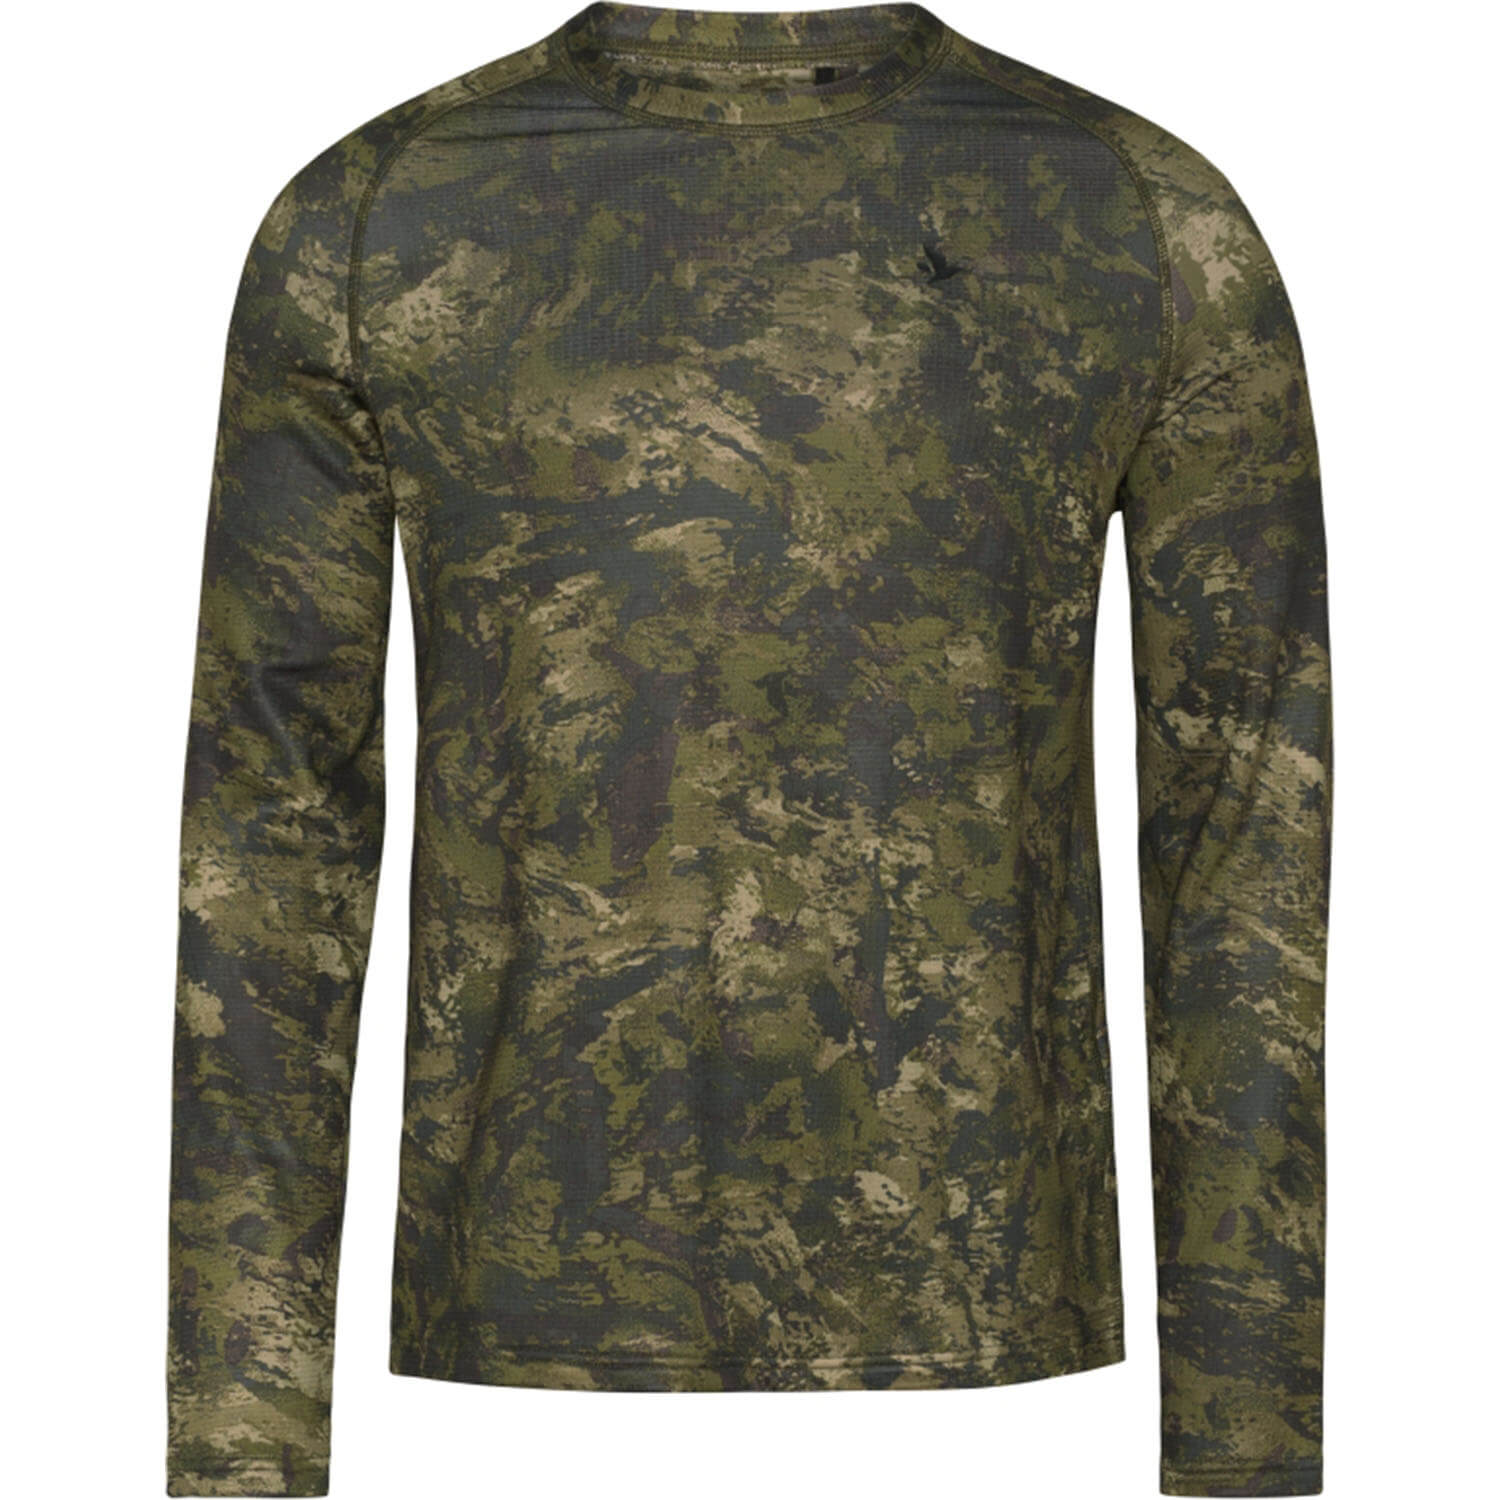  Seeland Active shirt met lange mouwen (Invis) - Overhemden & shirts